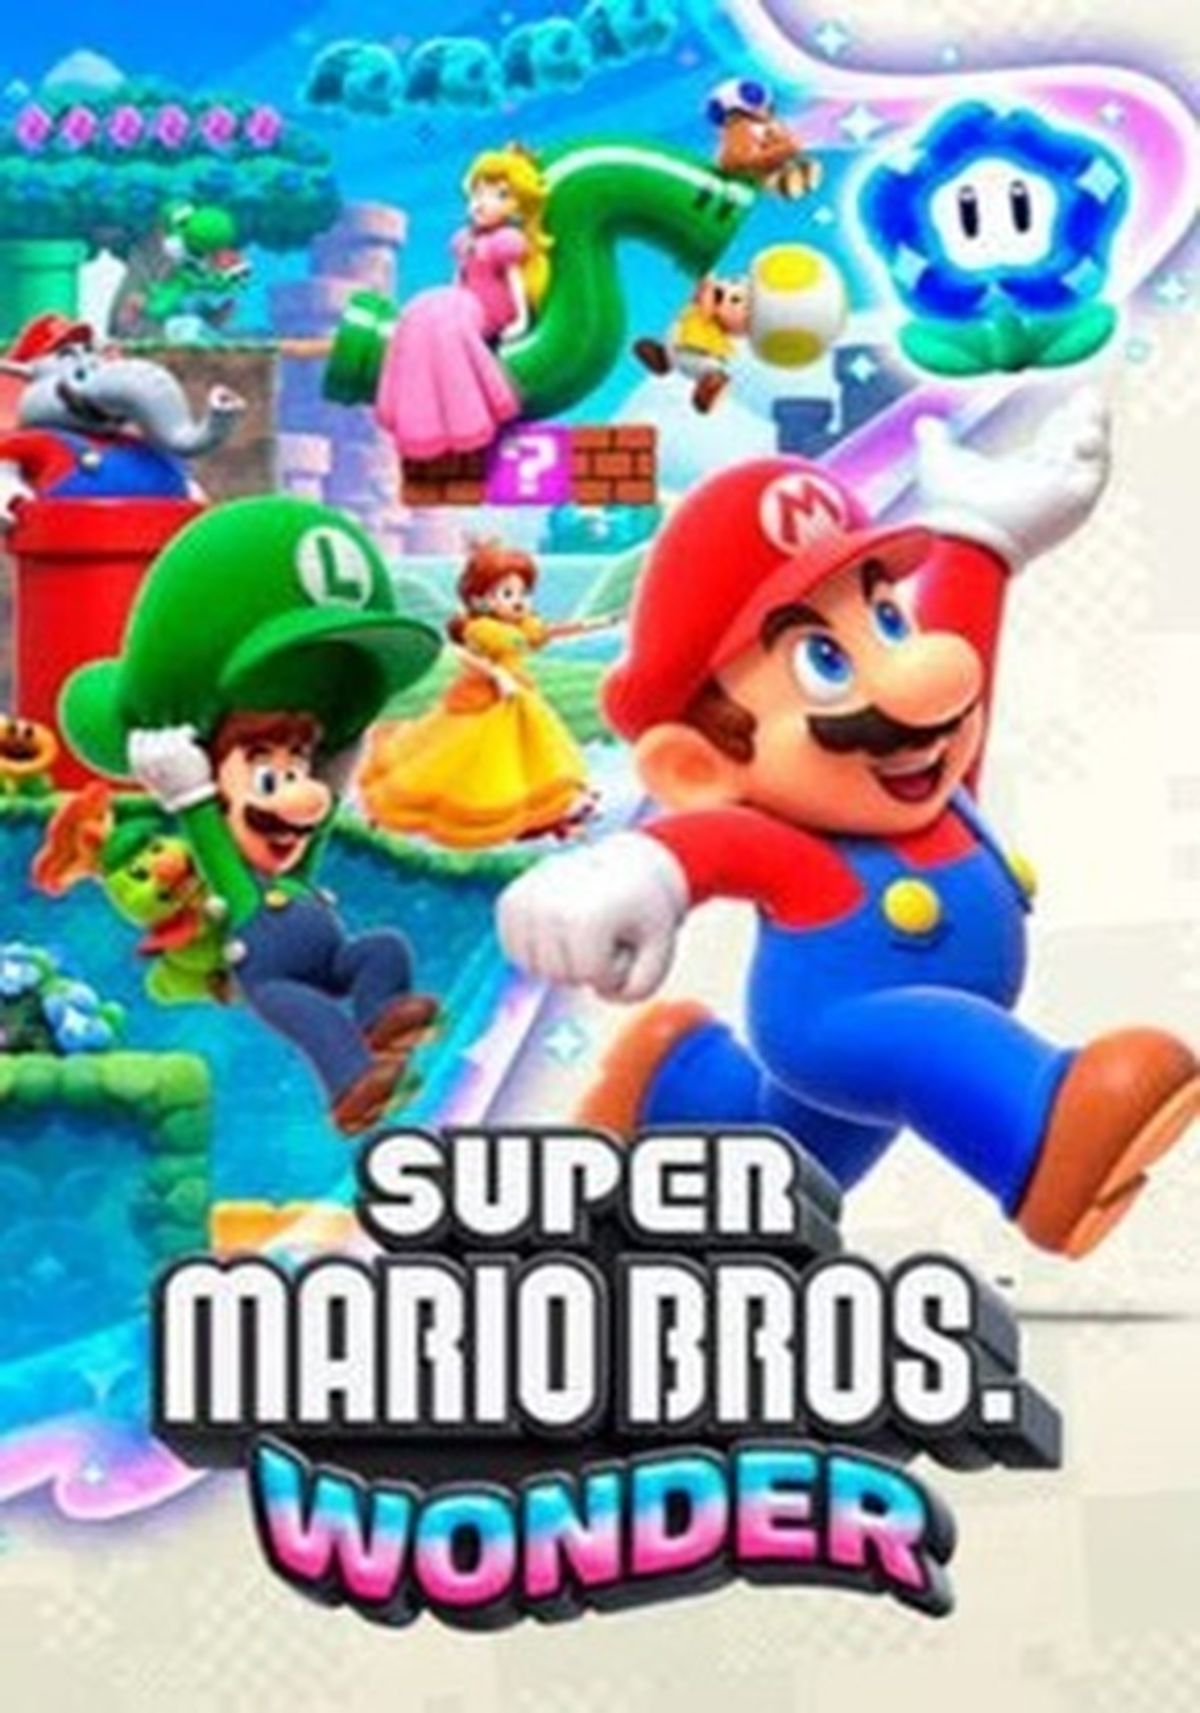 He jugado una hora a Super Mario Bros. Wonder y lo maravilloso no es solo  lo bueno que es, sino su increíble capacidad para sorprenderte - Super Mario  Bros. Wonder - 3DJuegos